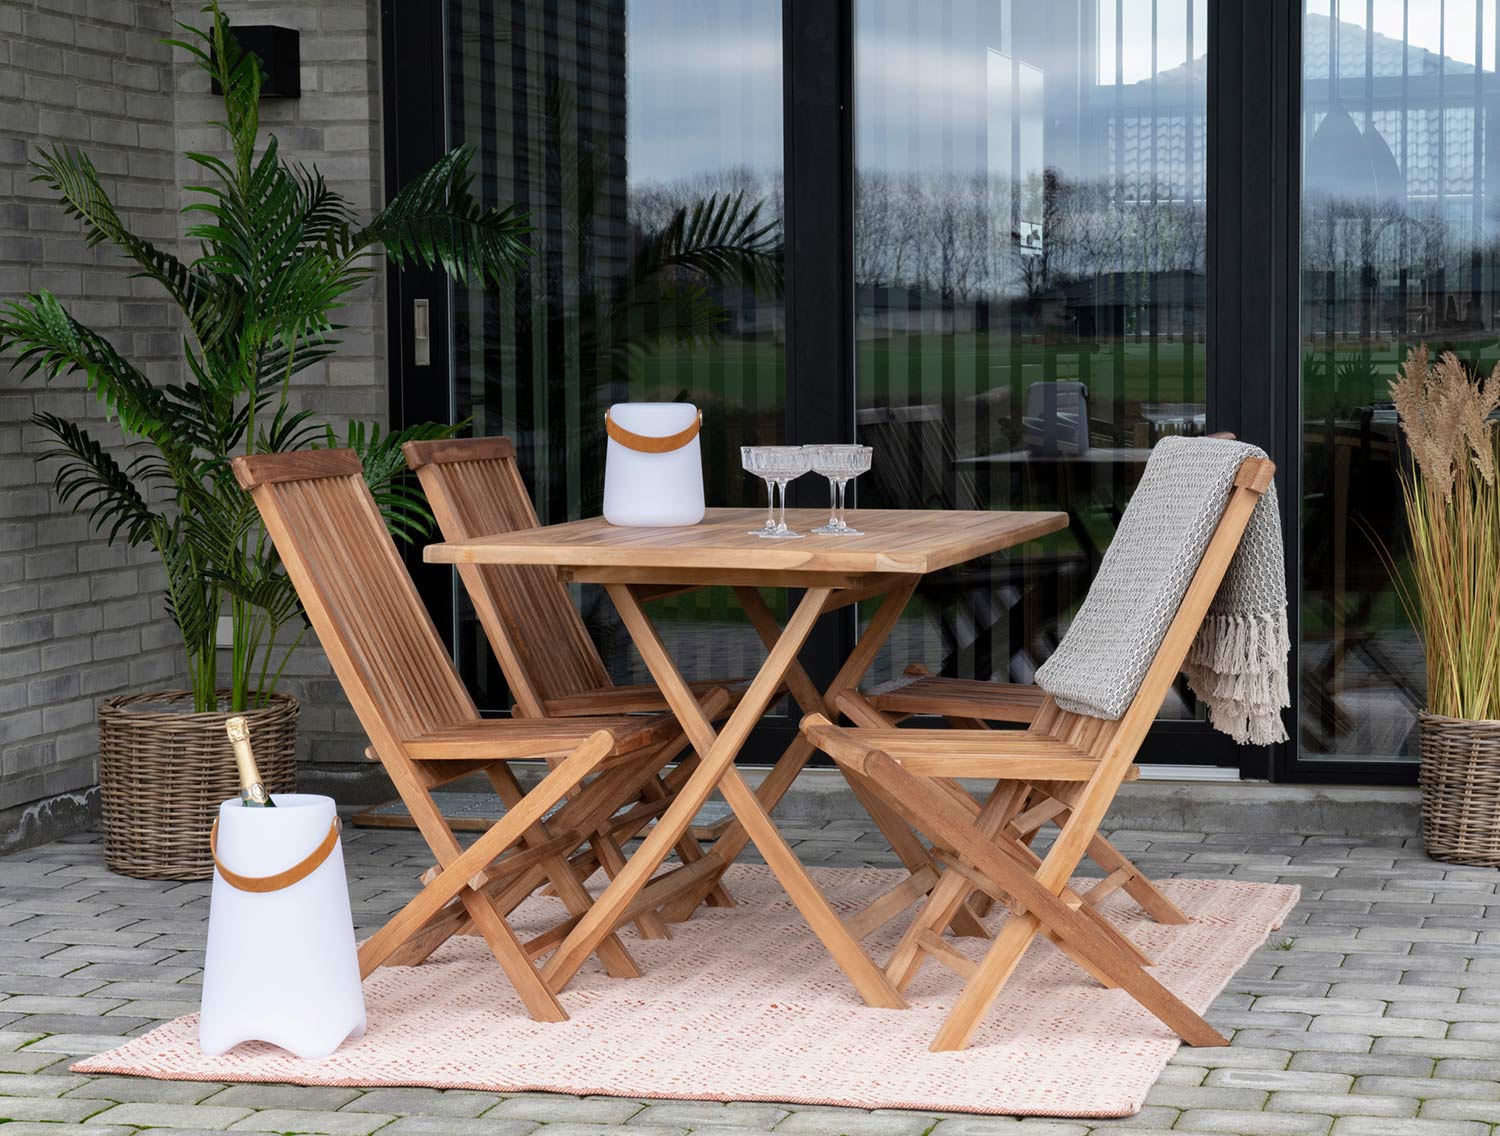 Natúr színű teakfából készült, összecsukható kerti szék.